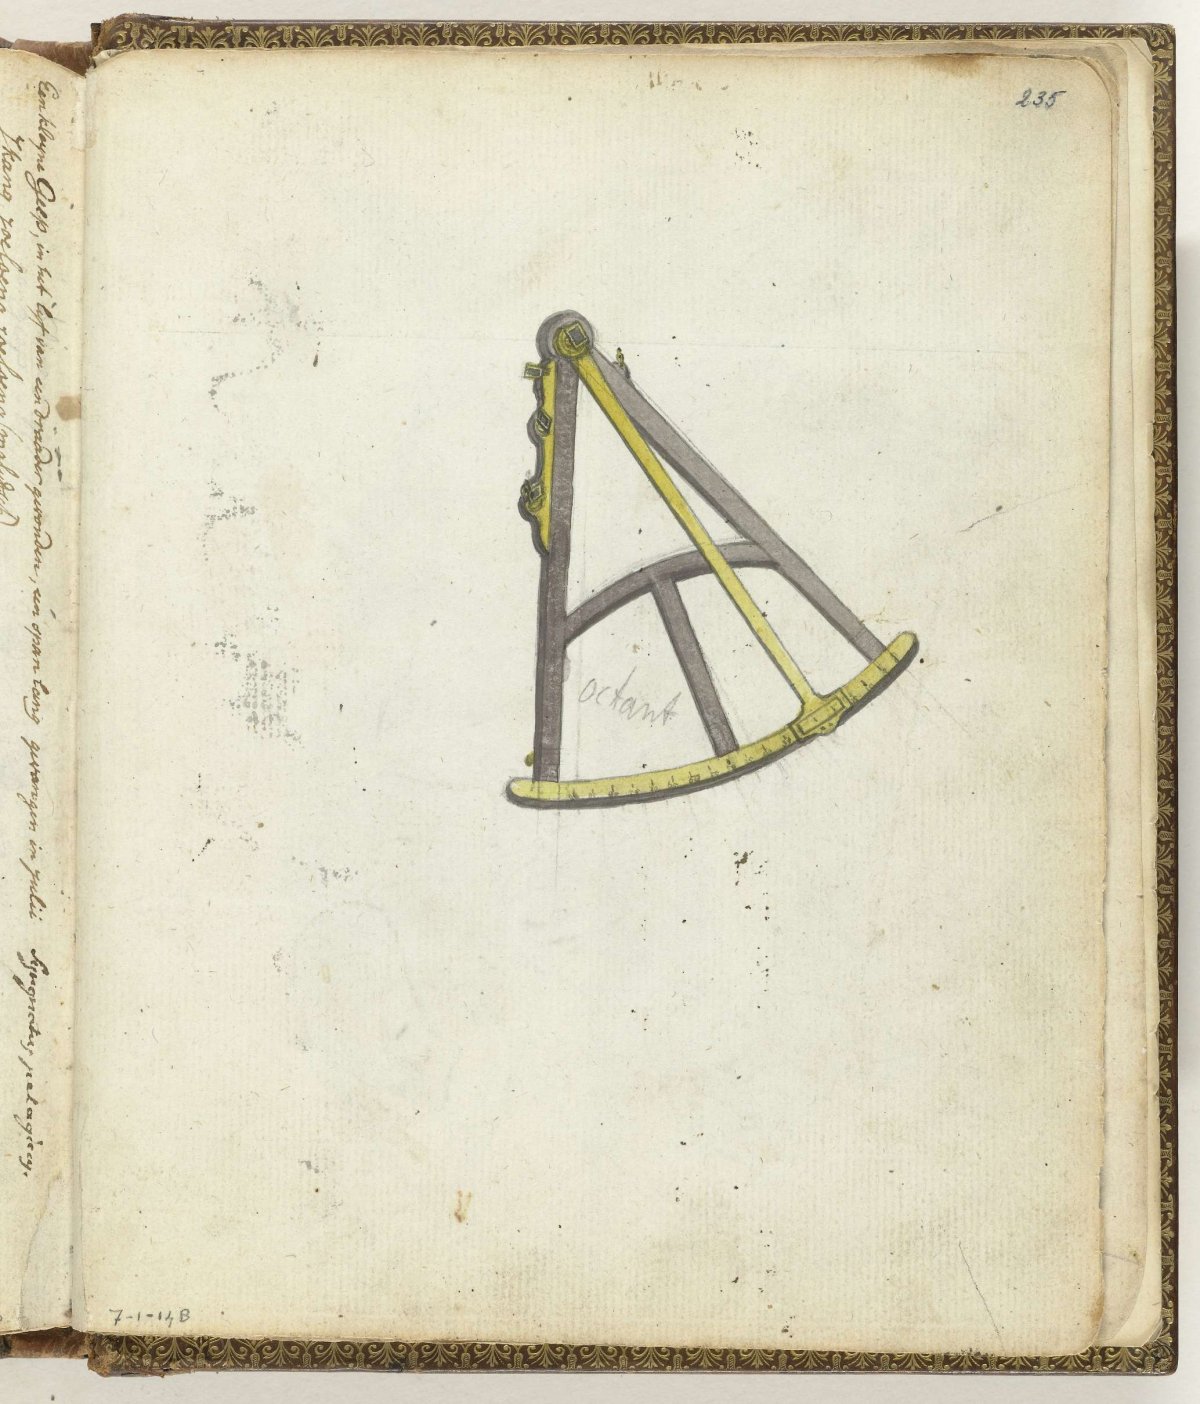 Octant, Jan Brandes, 1770 - 1808